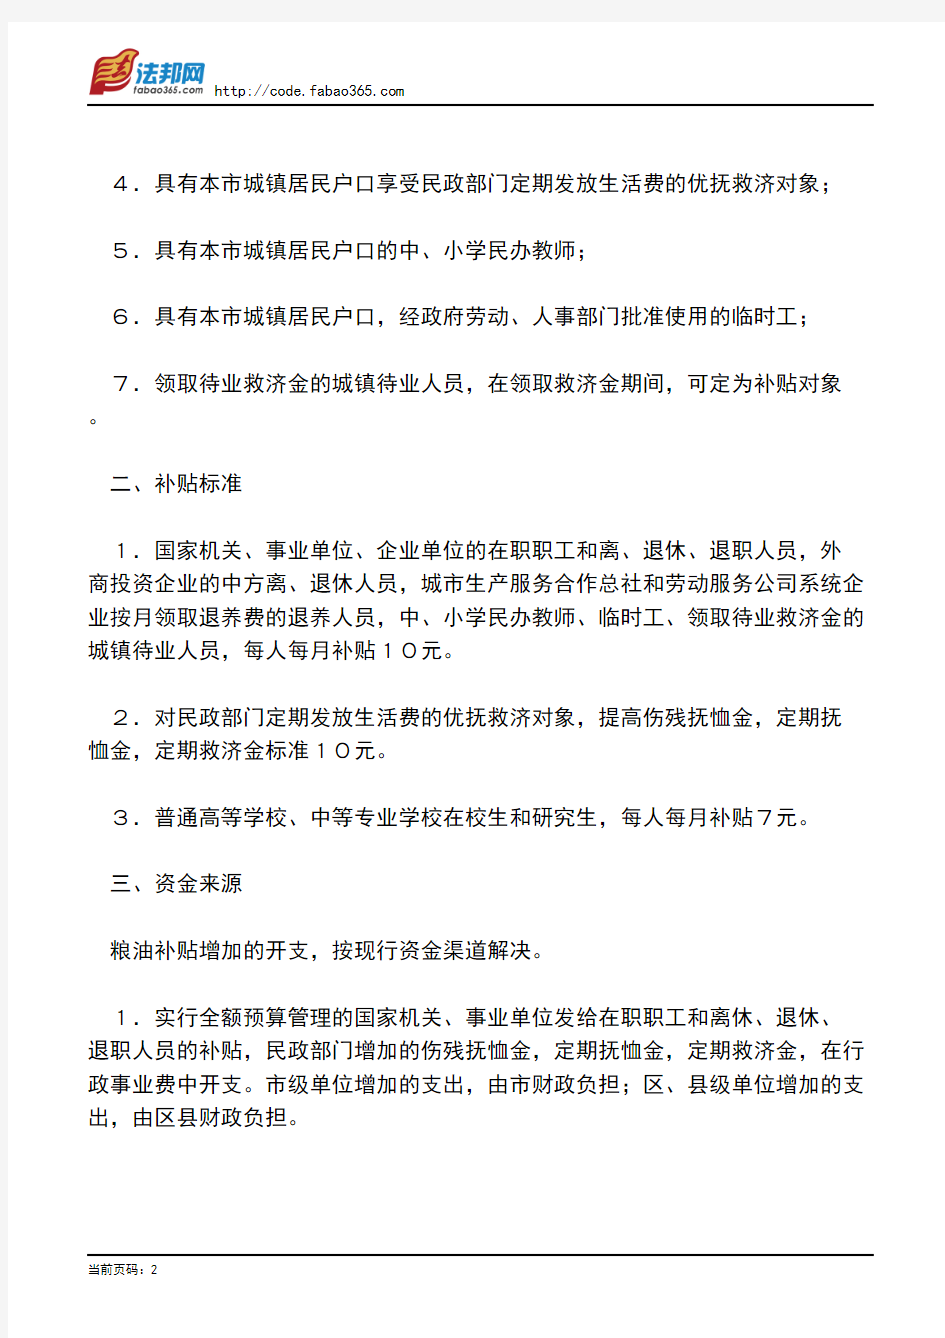 北京市财政局、北京市劳动局、北京市人事局关于发放职工等有关人员粮油价格补贴的通知[失效]